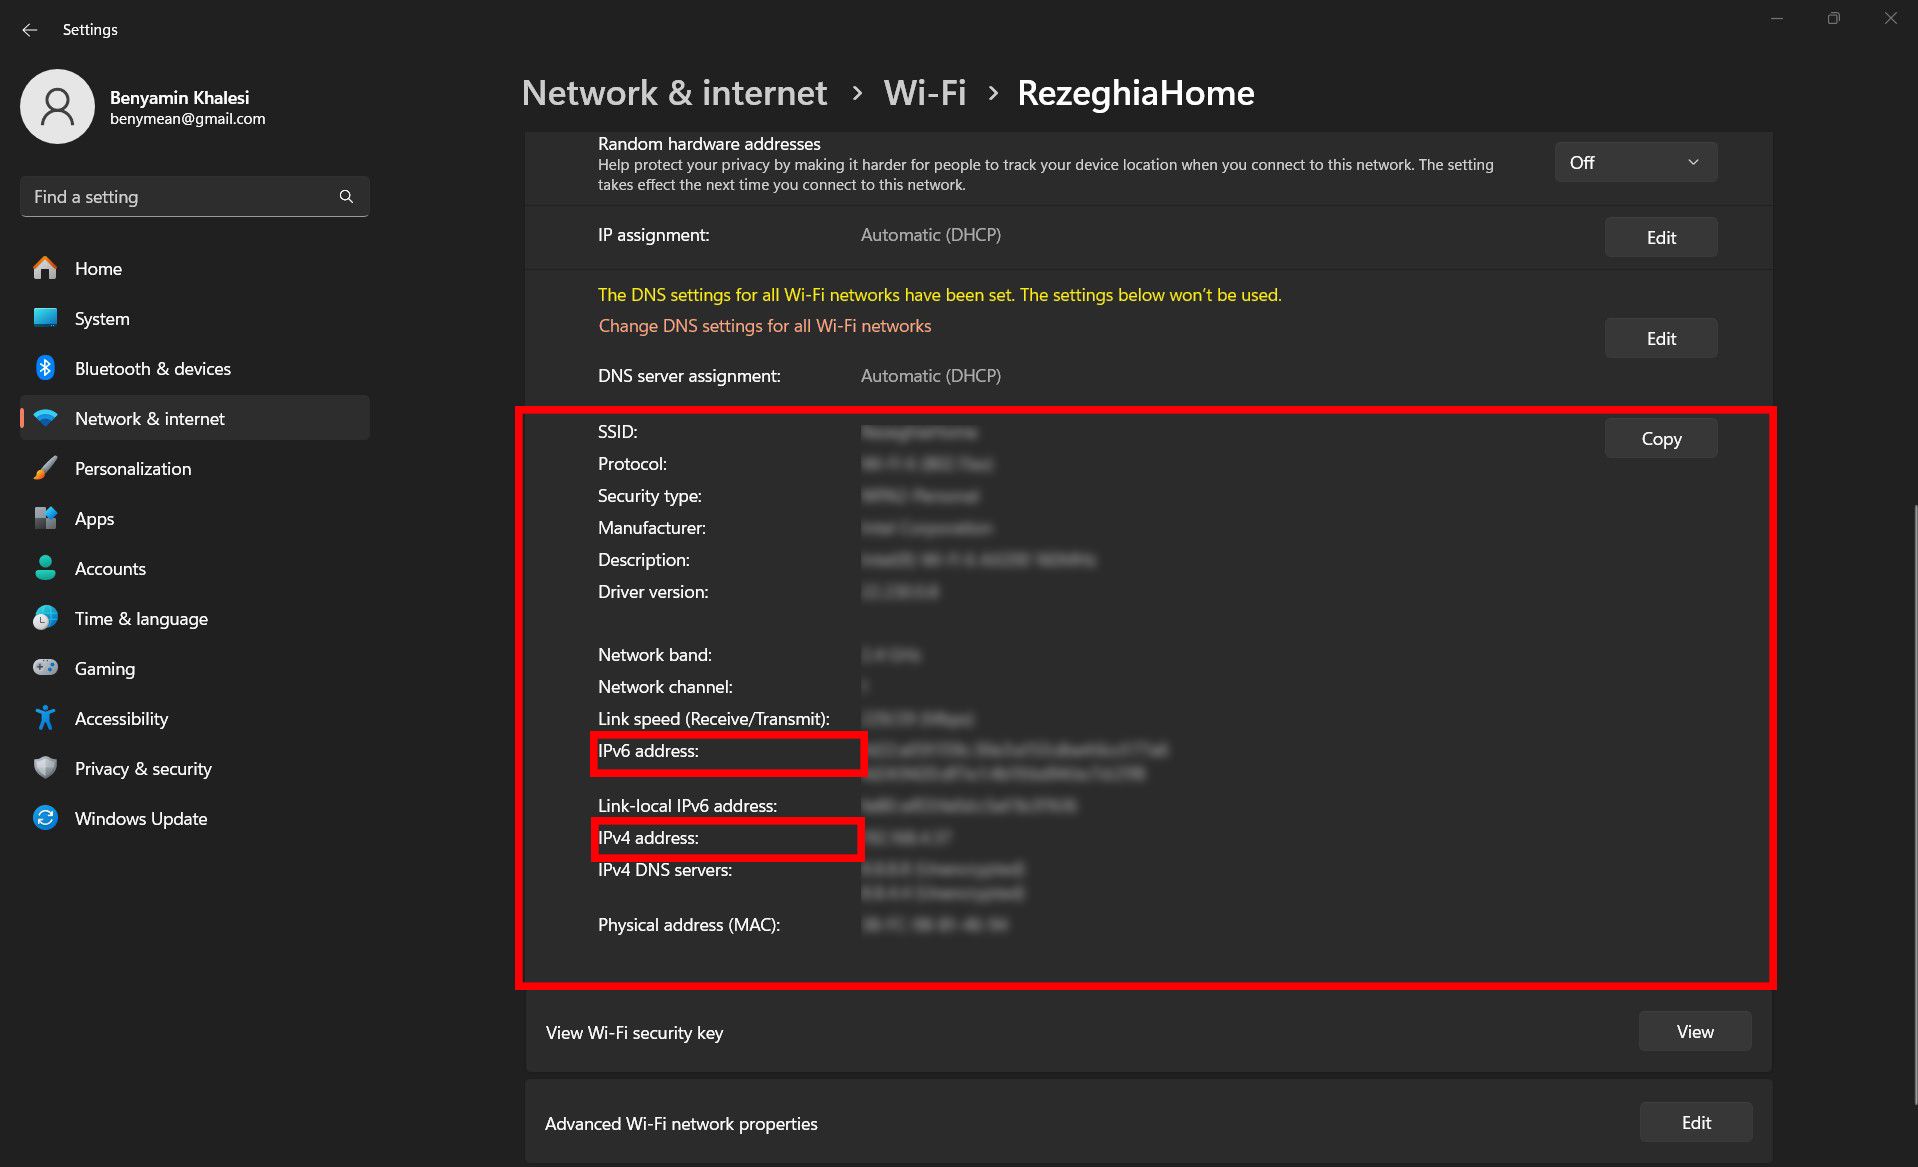 Uma captura de tela das configurações de Wi-Fi para 'RezeghiaHome' em um computador Windows.  Propriedades detalhadas da rede, como SSID, protocolo, tipo de segurança, endereços IPv4 e IPv6 são visíveis.